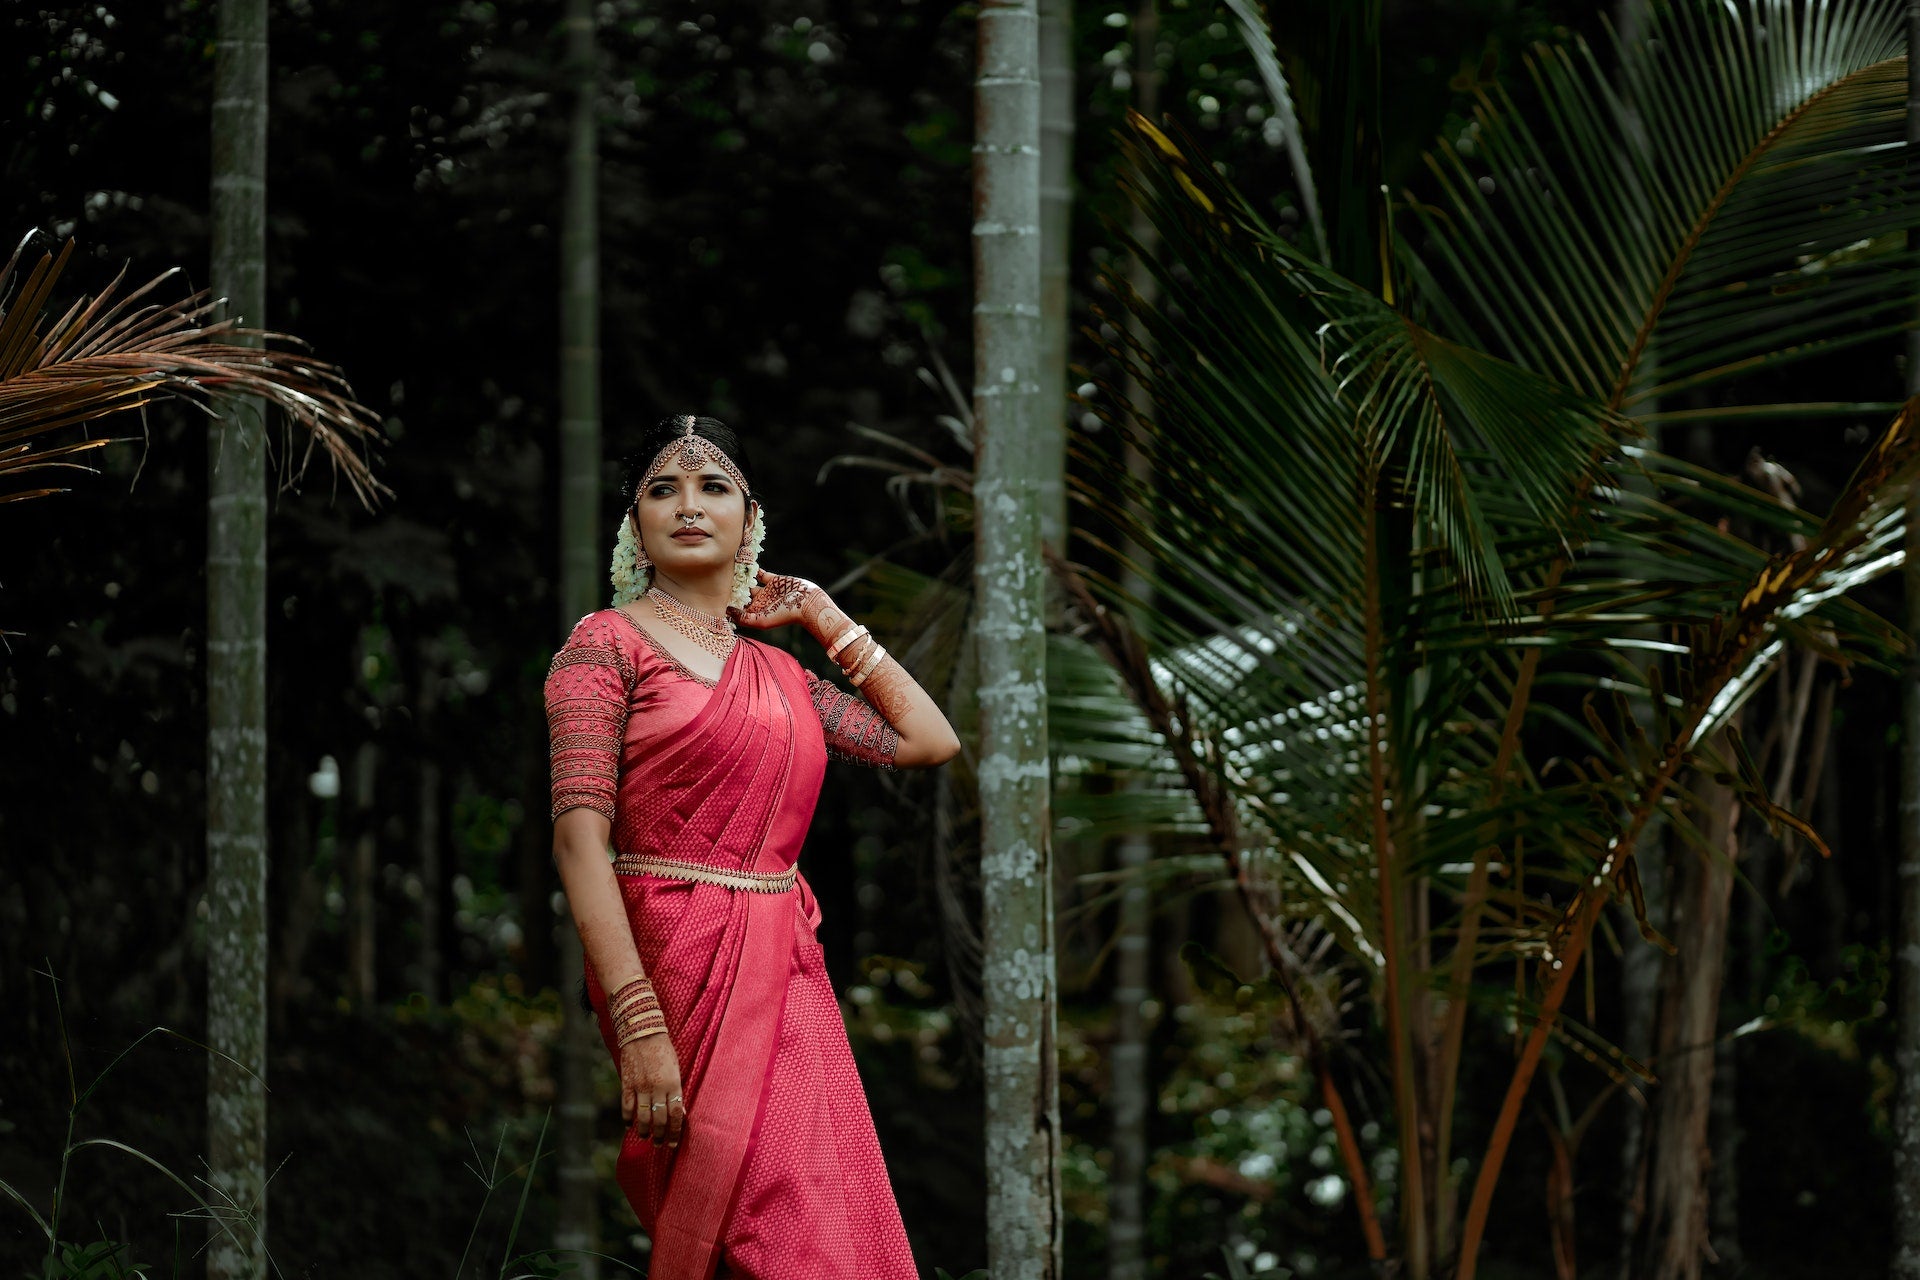 Indian wedding saree drapes